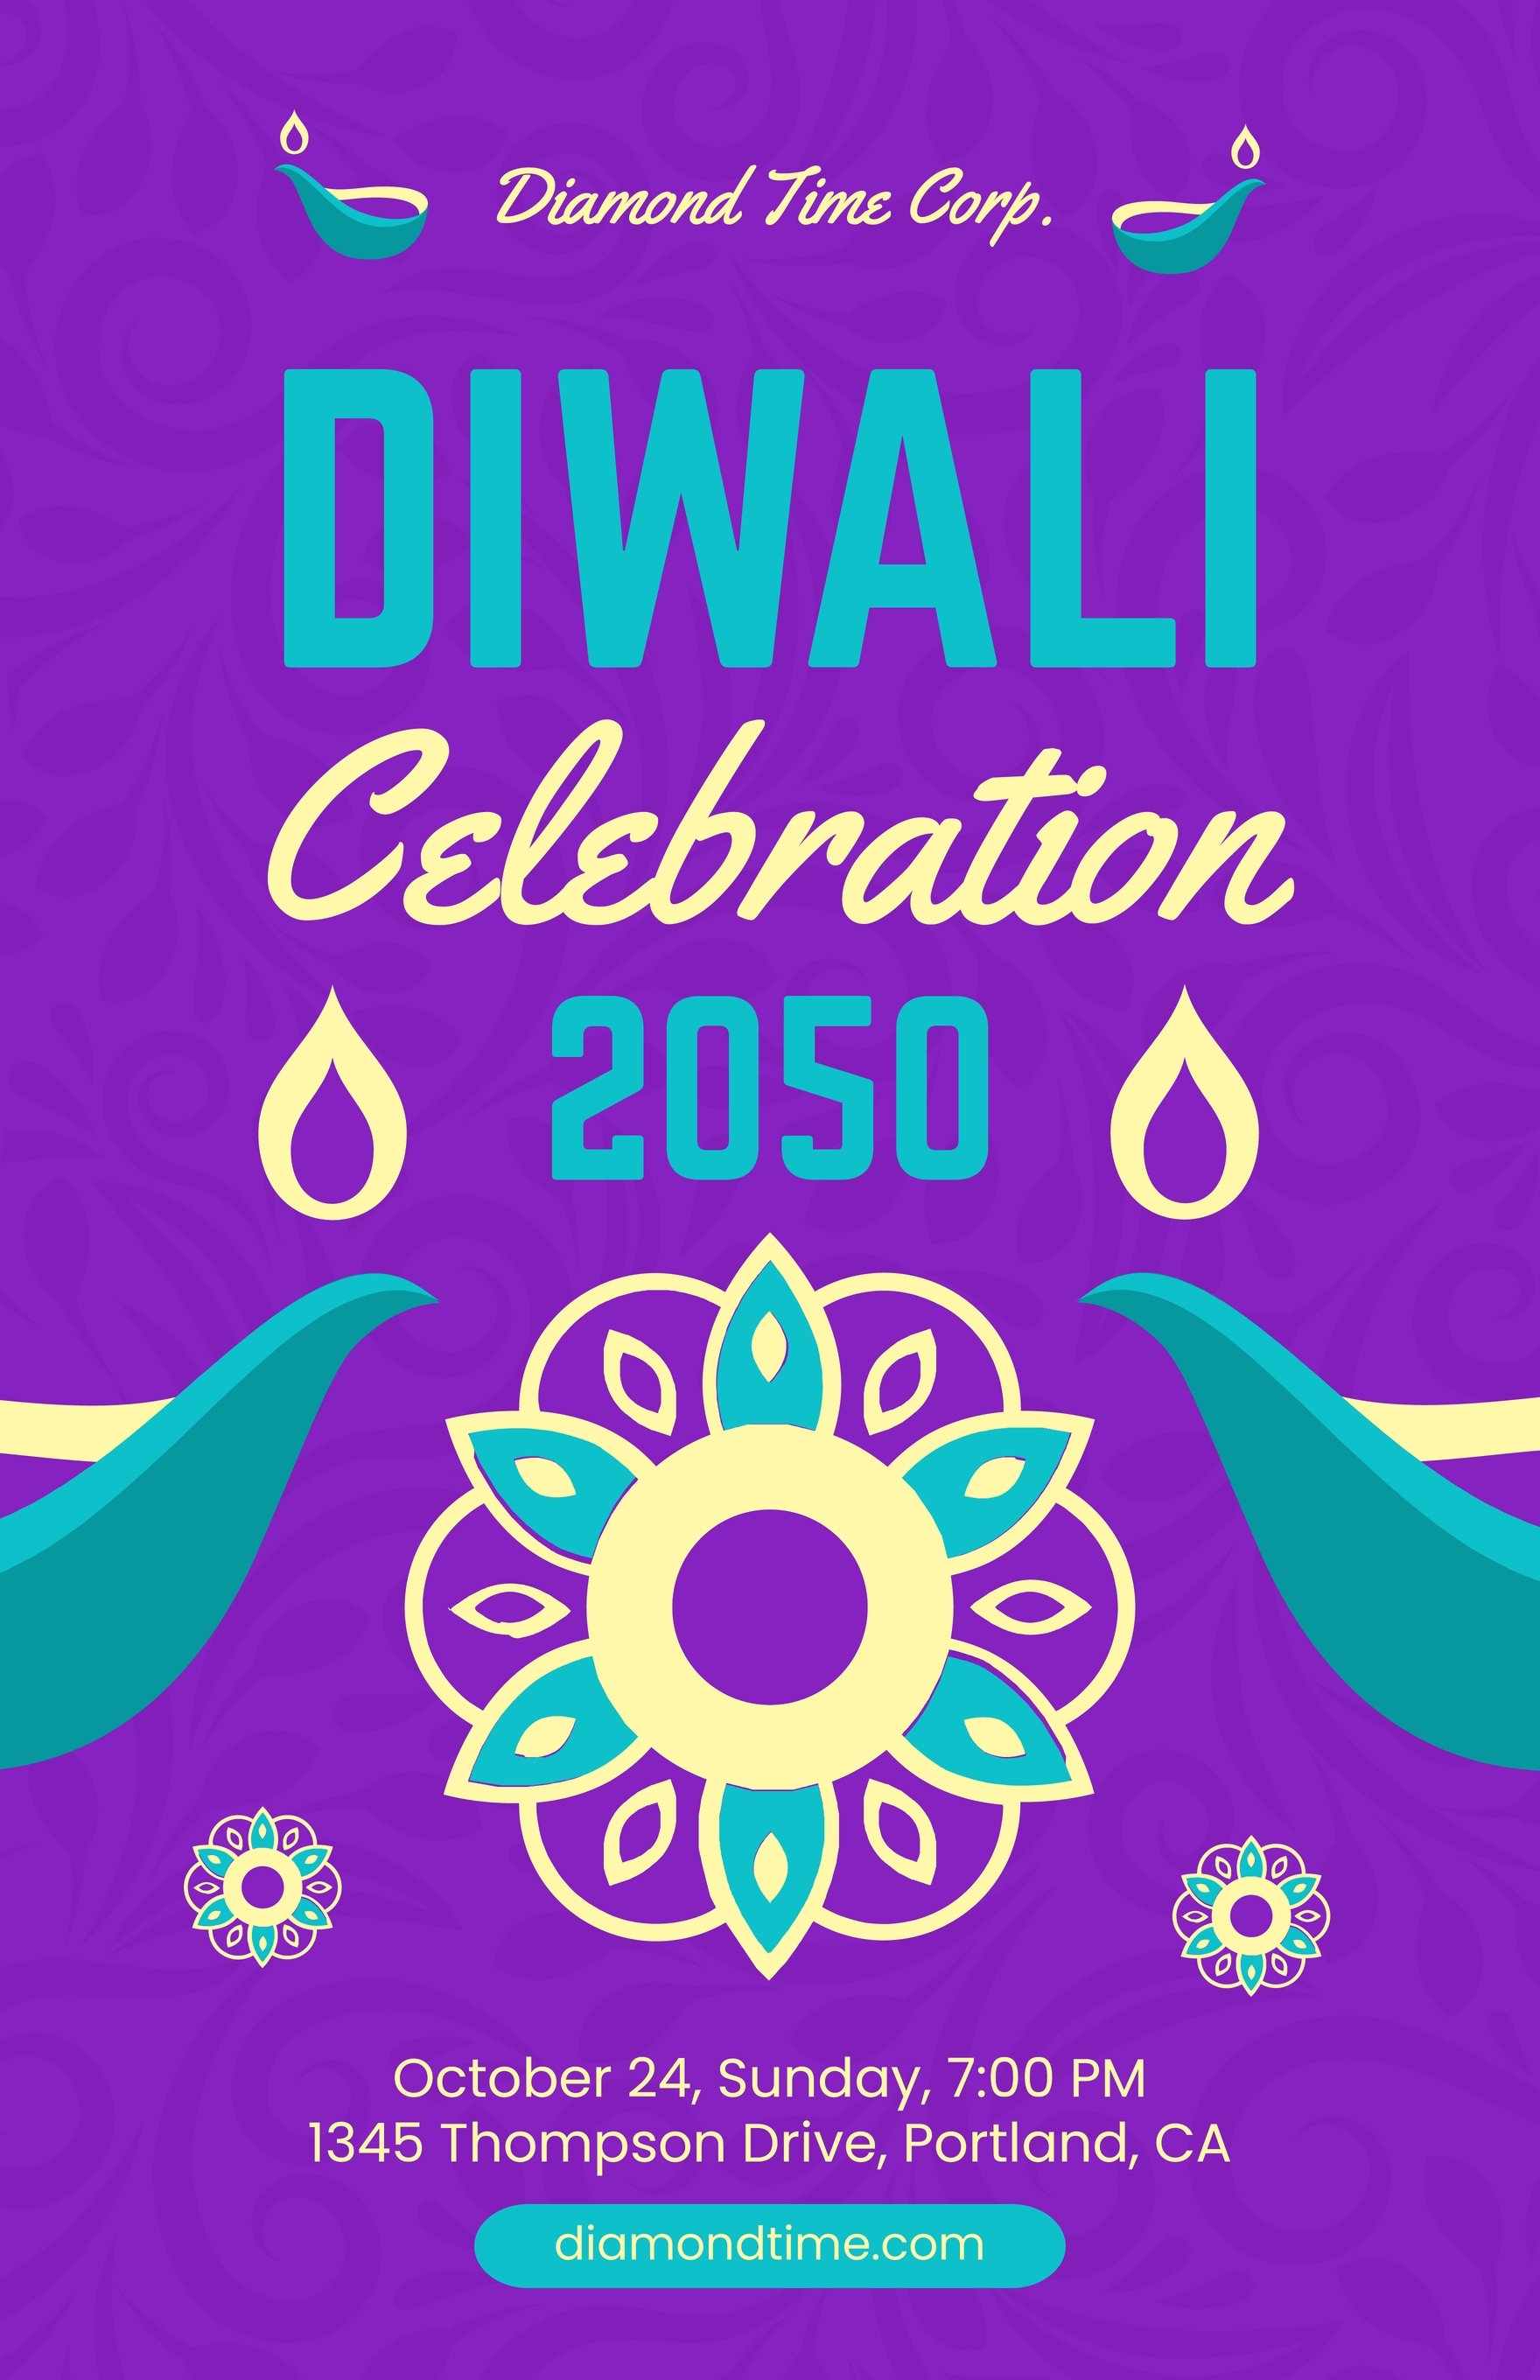 Diwali Event Poster in Word, Google Docs, Illustrator, PSD, Apple Pages, Publisher, EPS, SVG, JPG, PNG